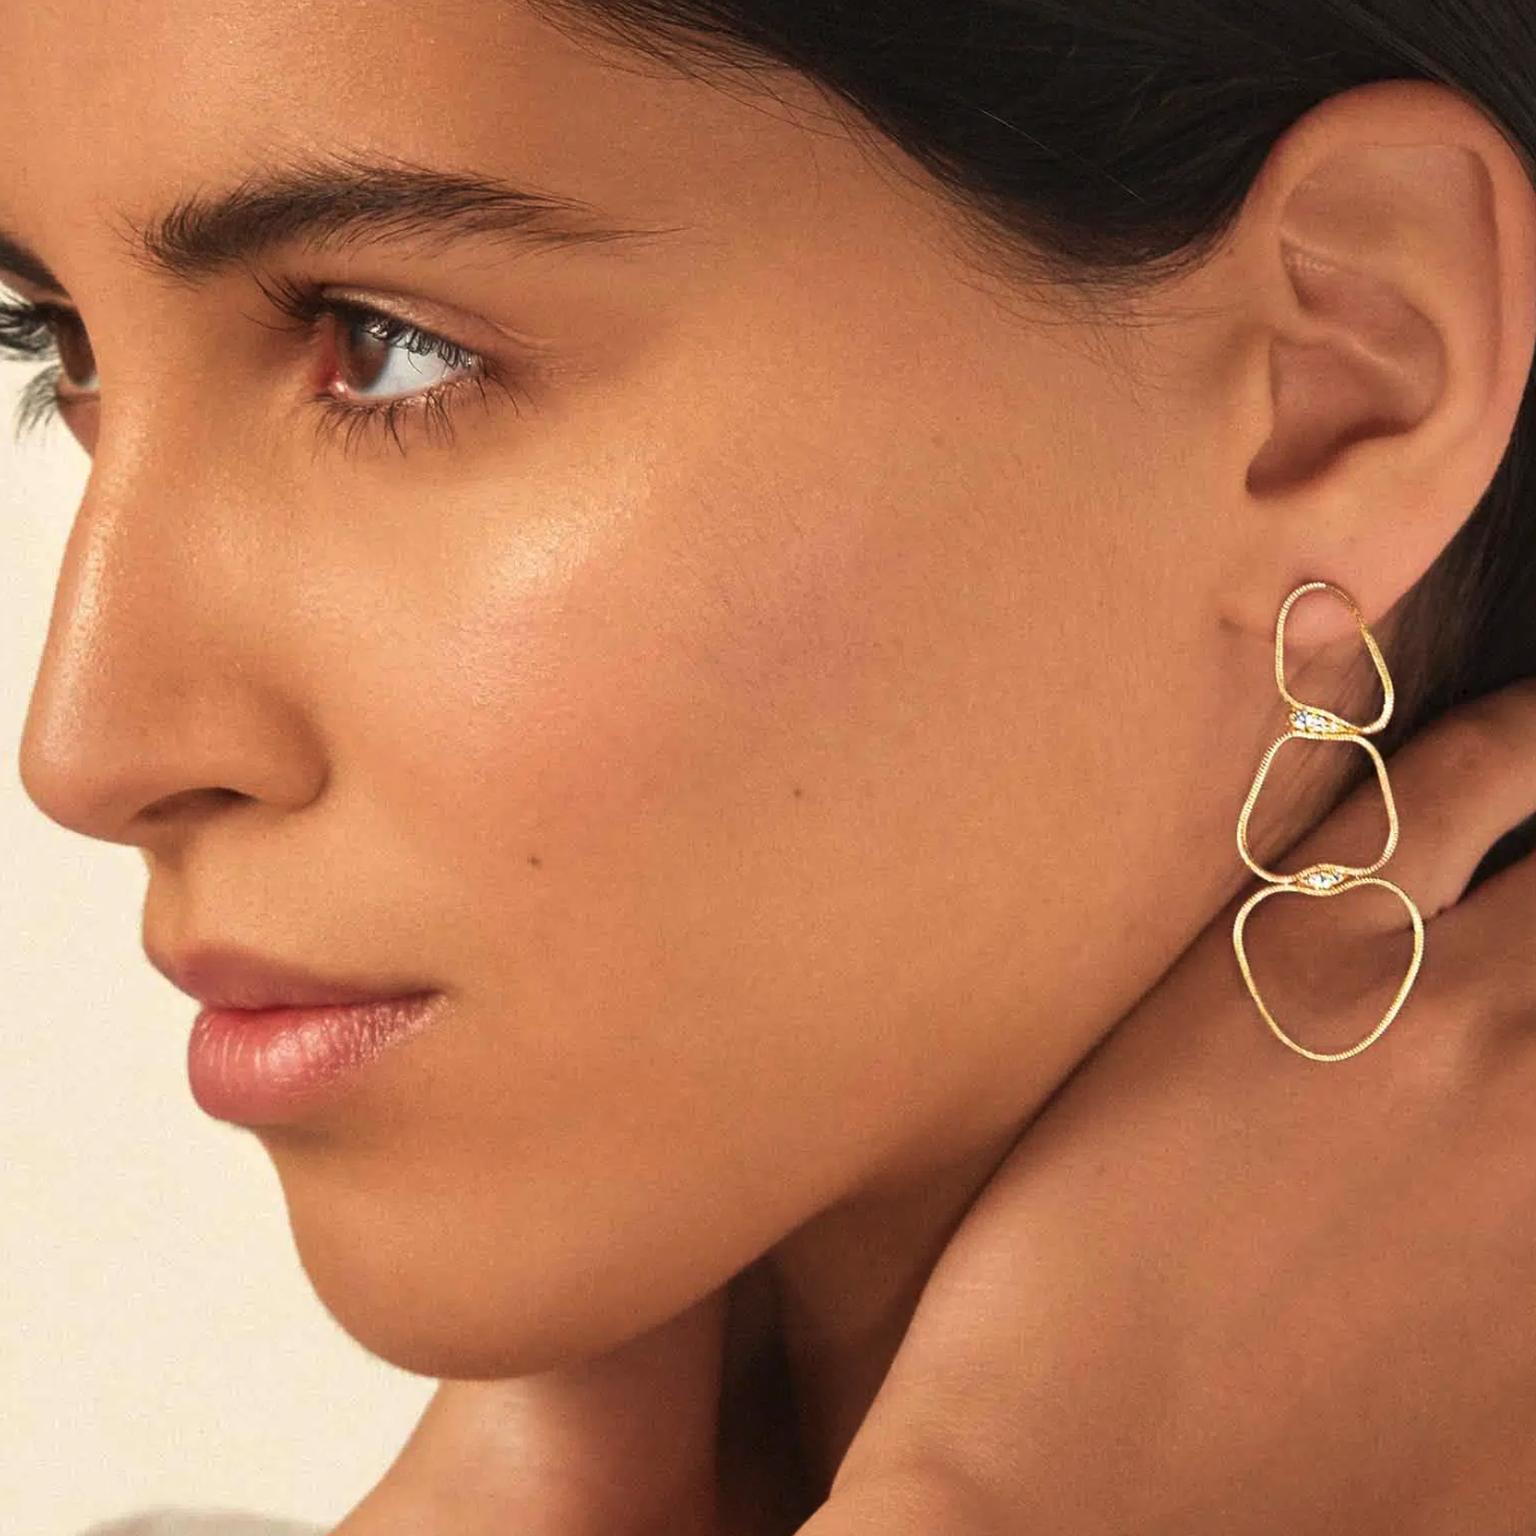 Earrings by Fernando Jorge on model